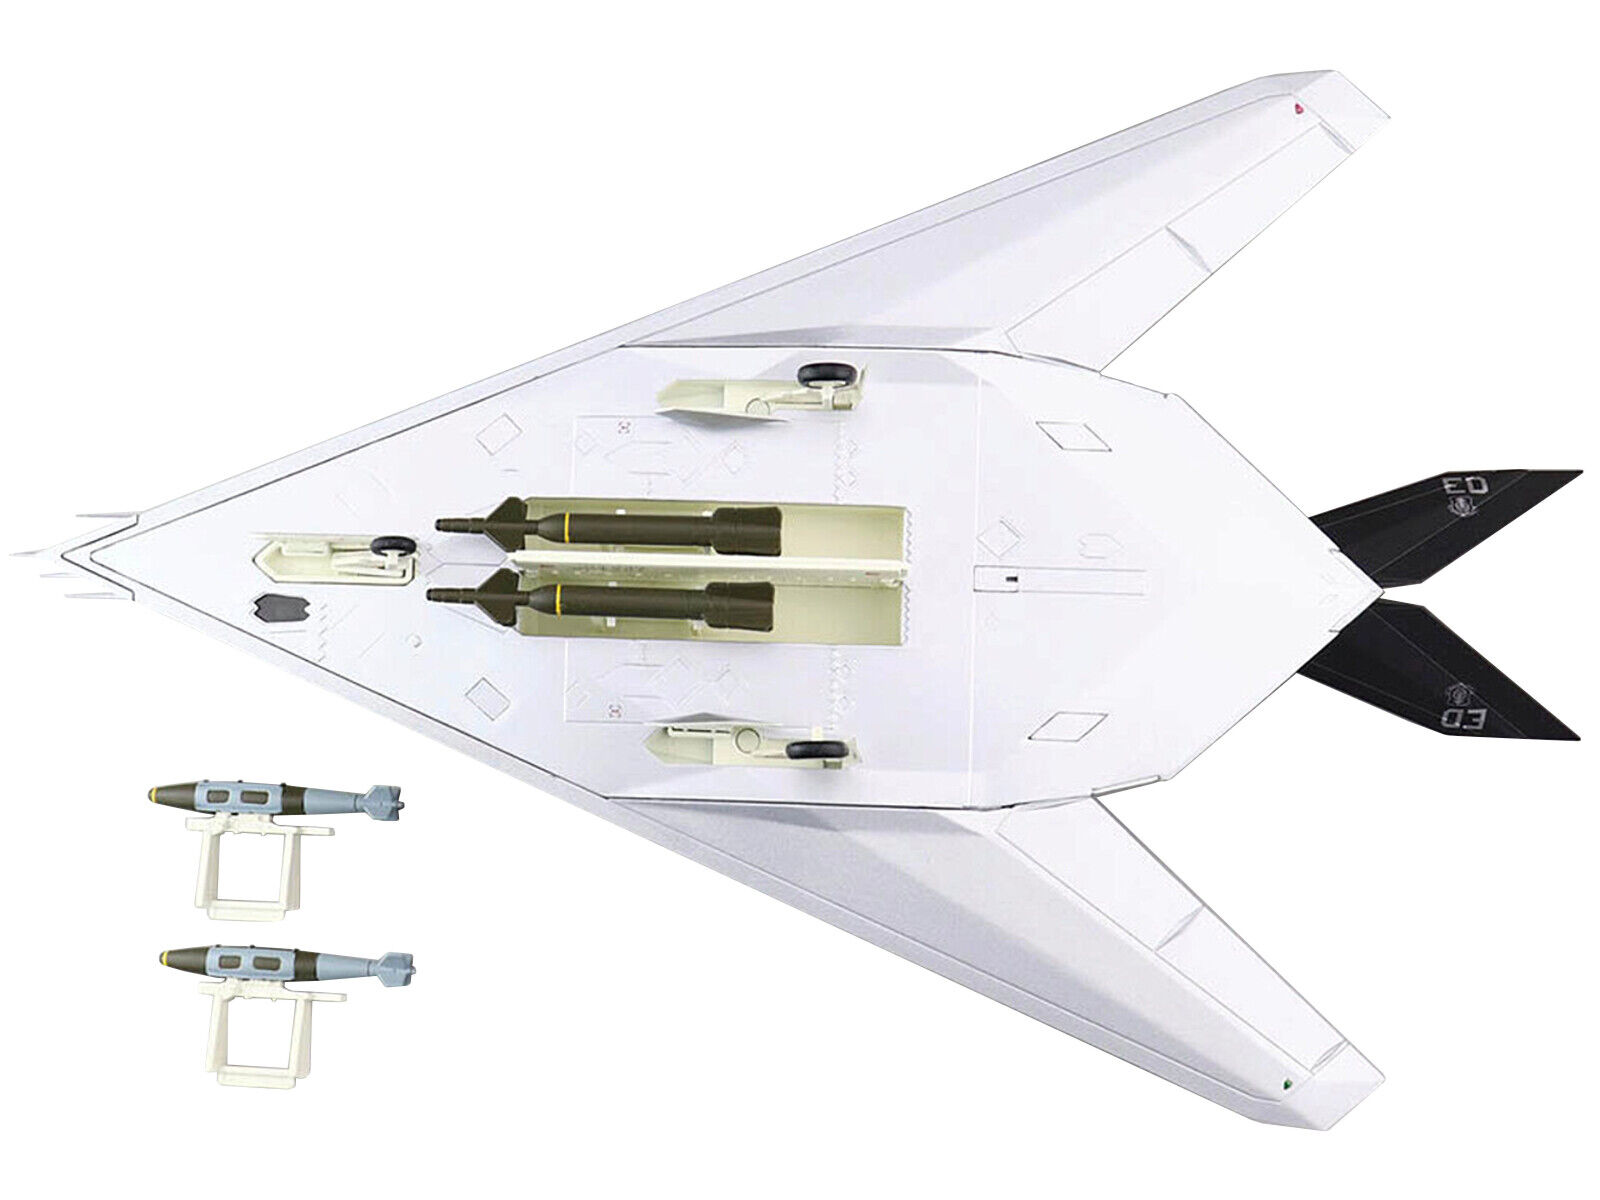 Lockheed F-117A Nighthawk Stealth Aircraft 